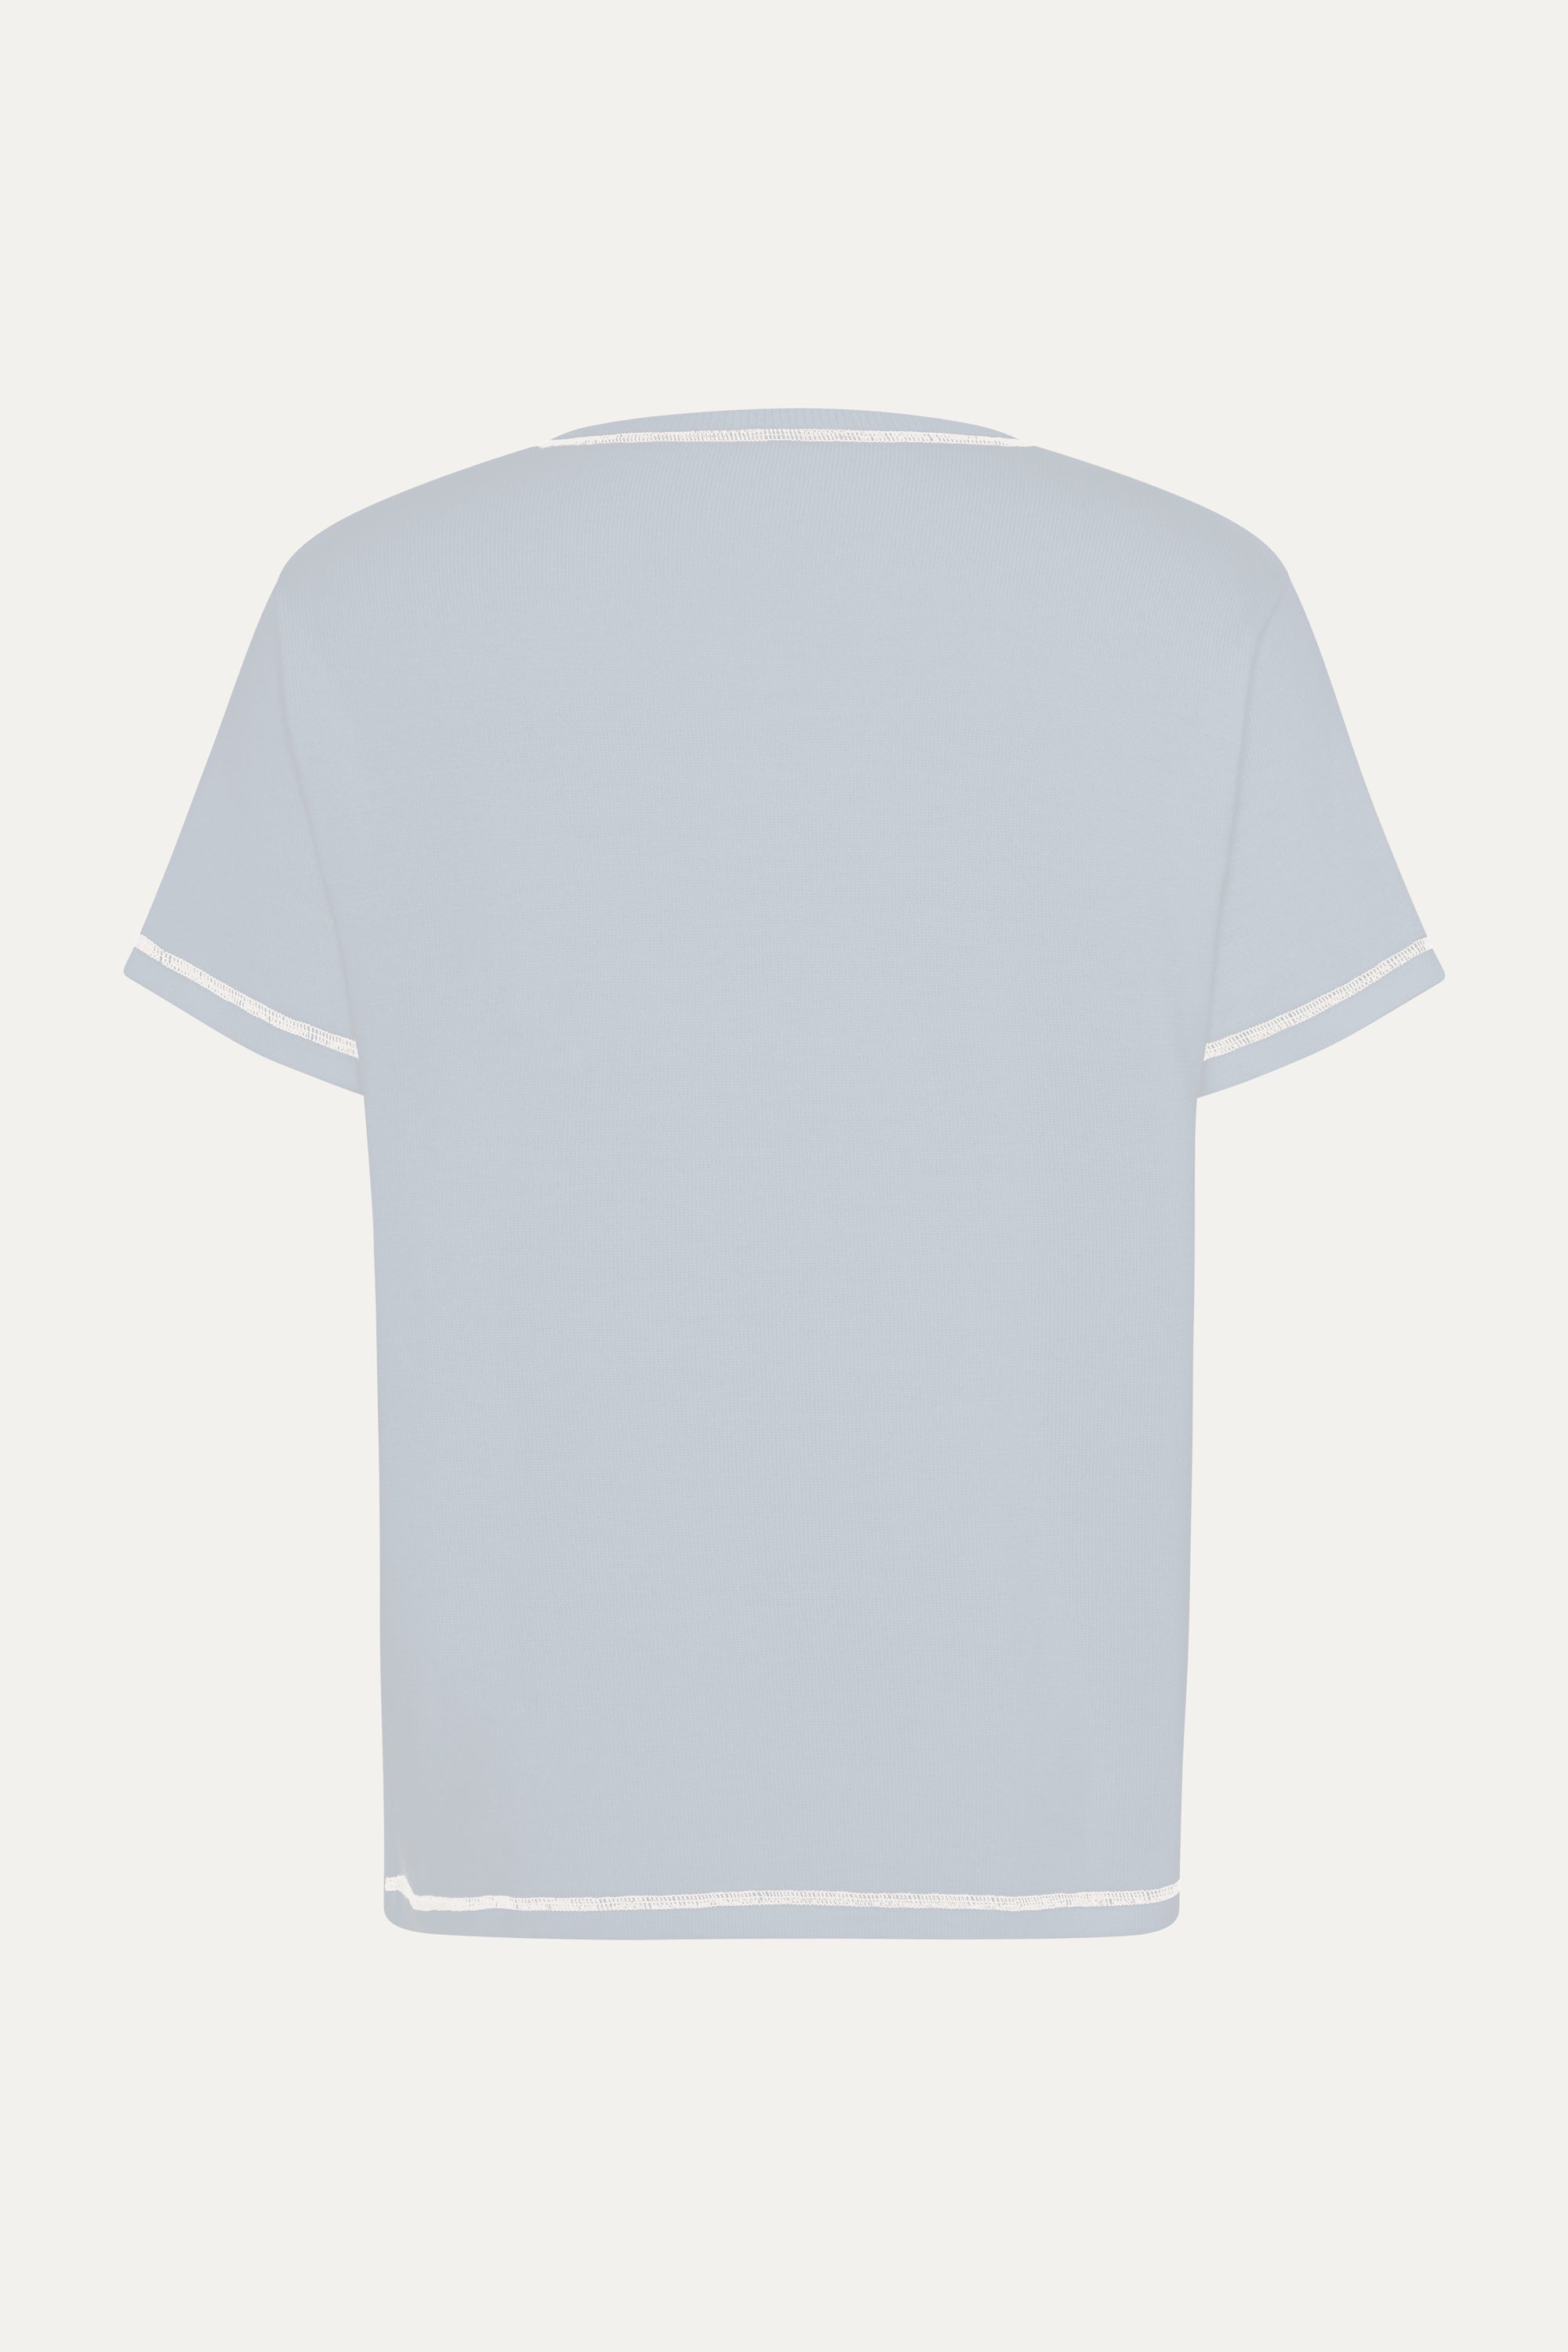 S/S T-Shirt In Powder Blue Merino Wool